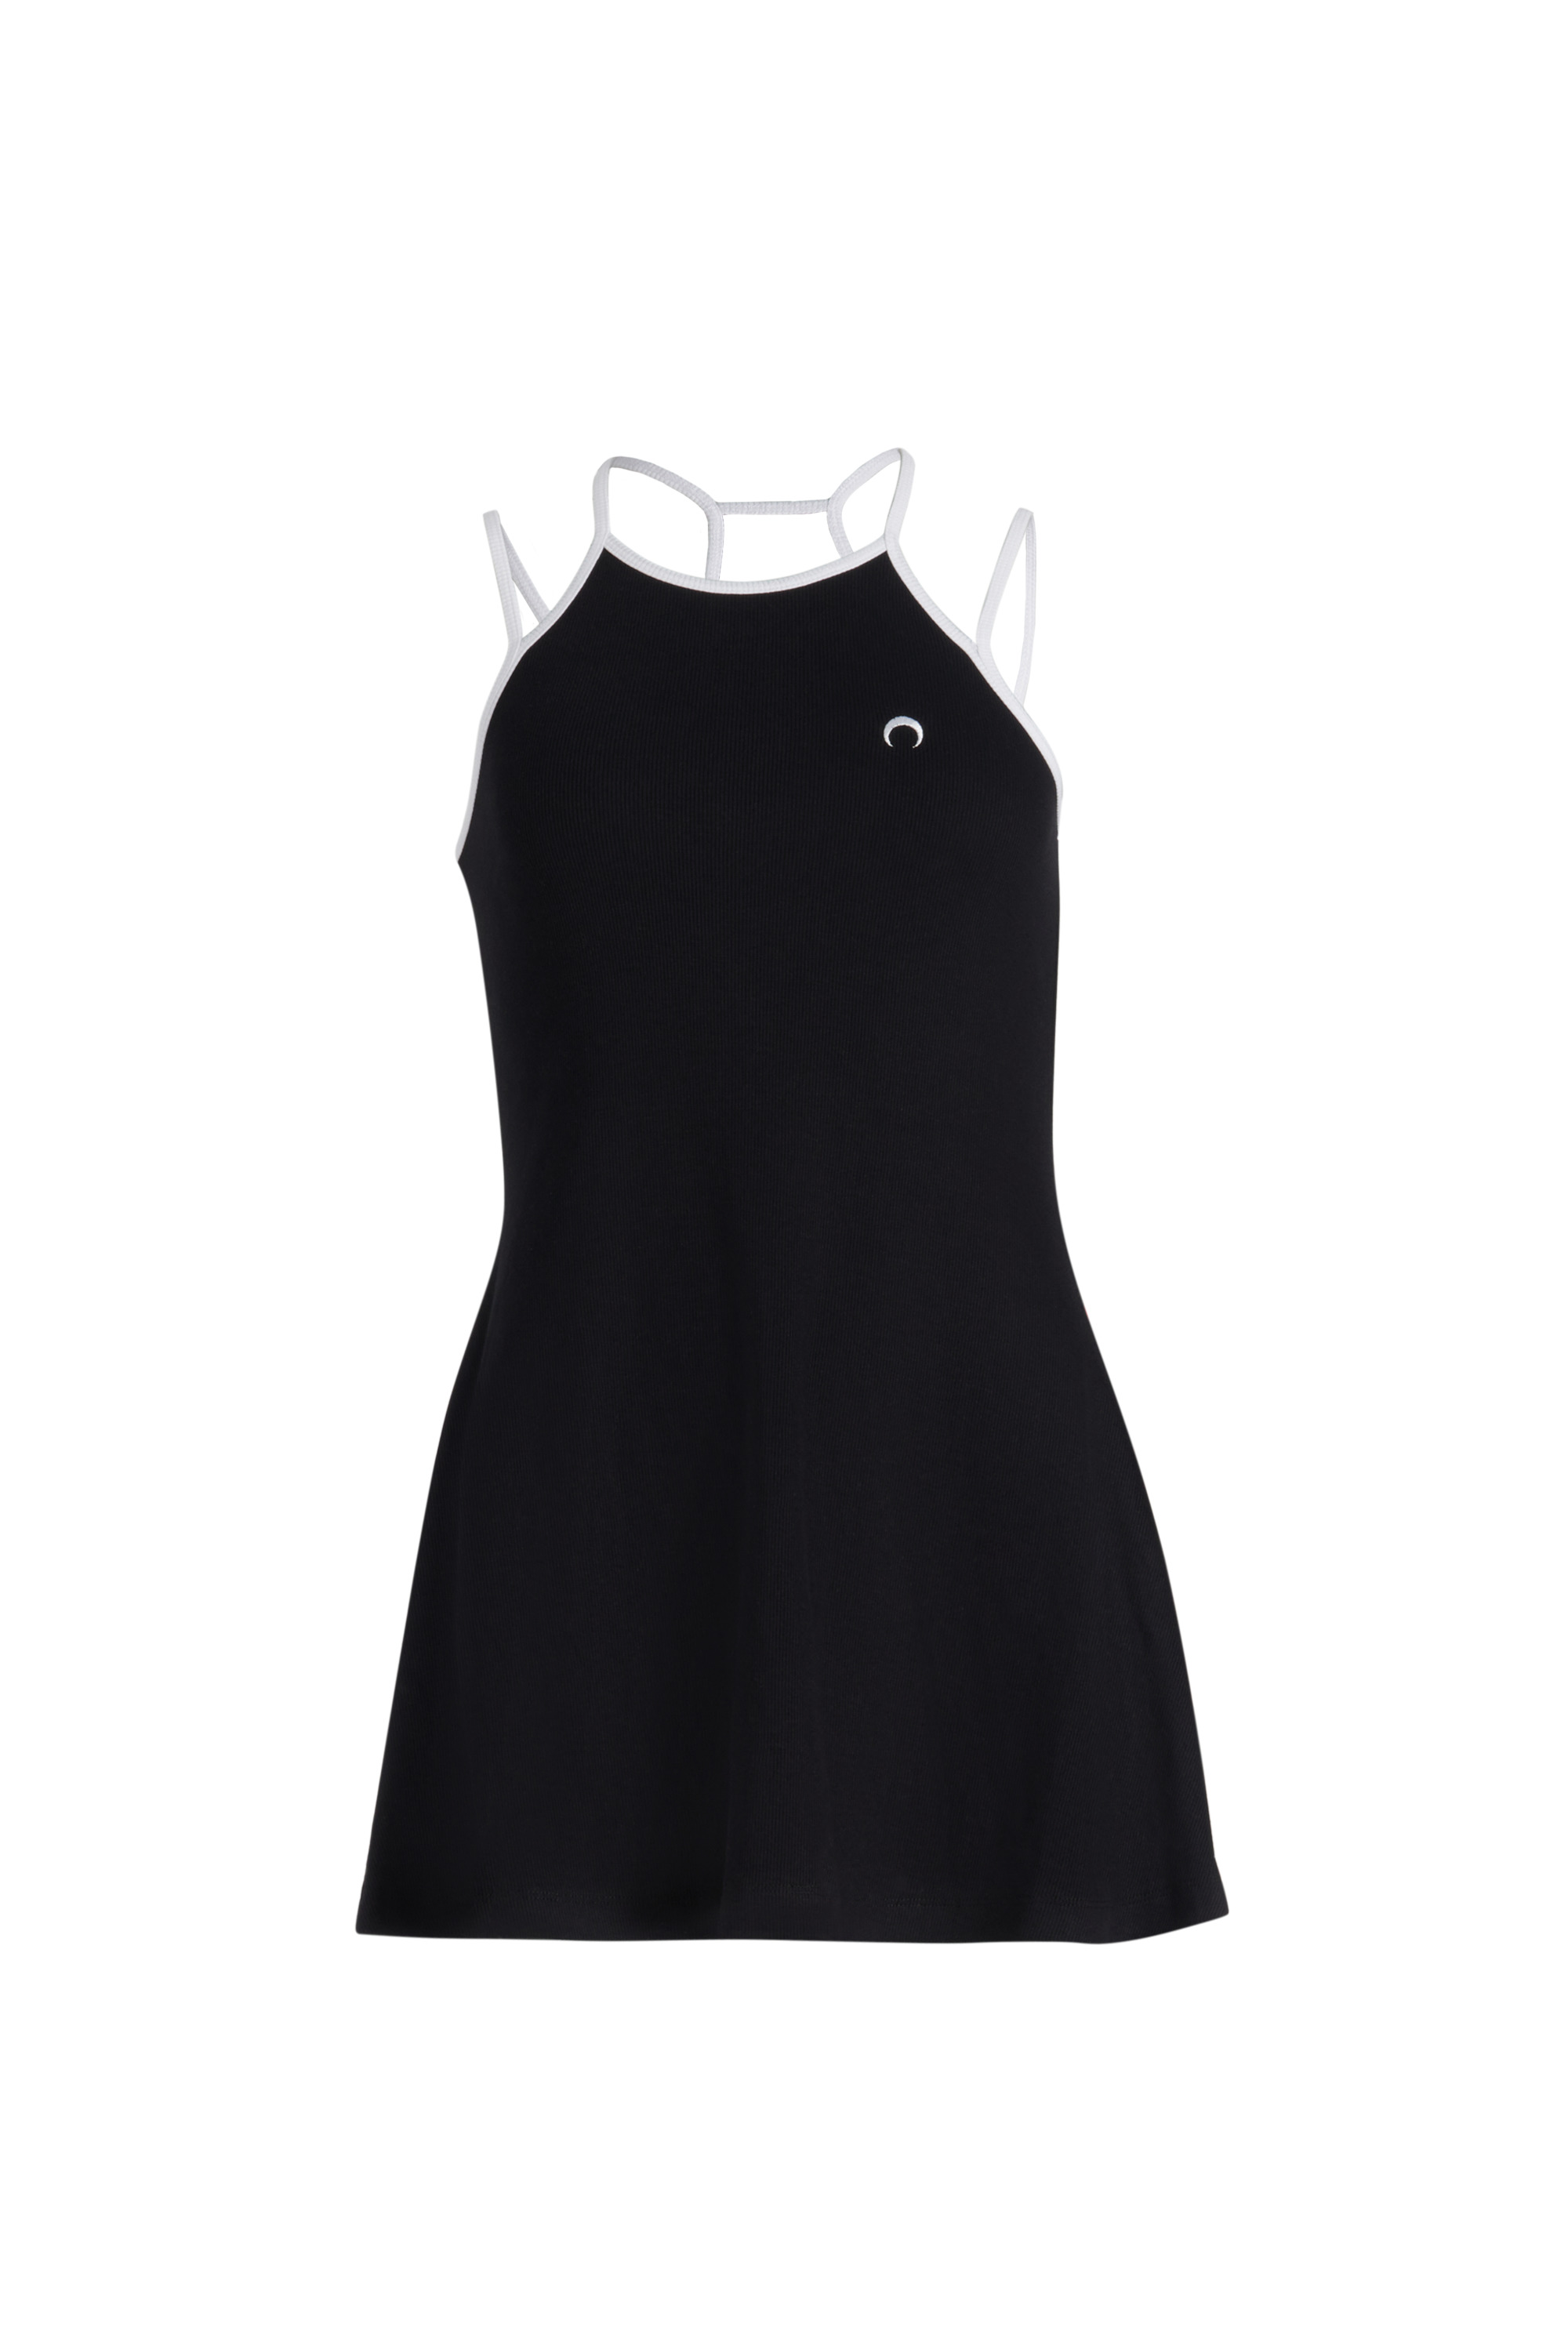 Organic Cotton Tennis Court Dress - 1